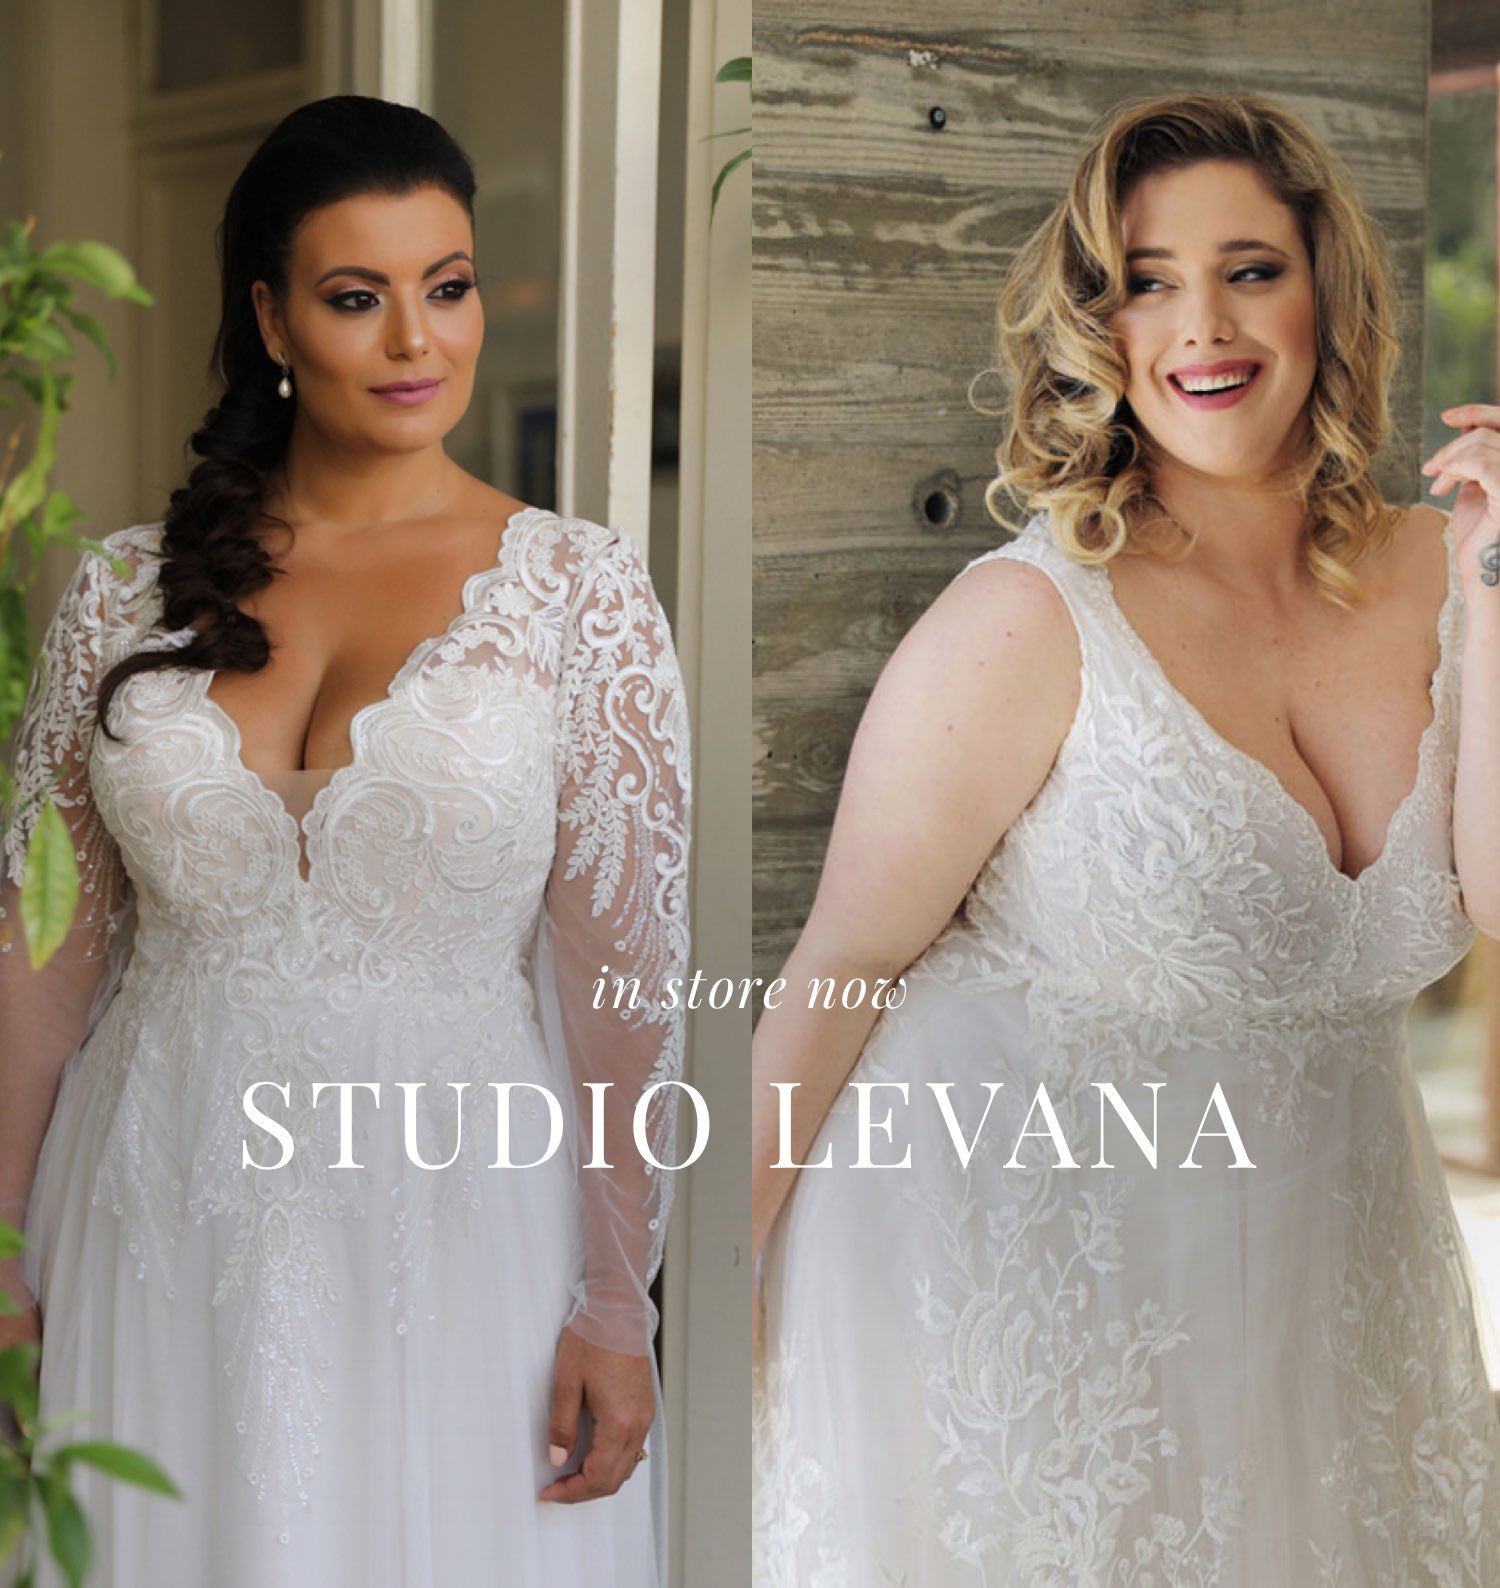 Studio Levana Wedding Dresses. Mobile Image.